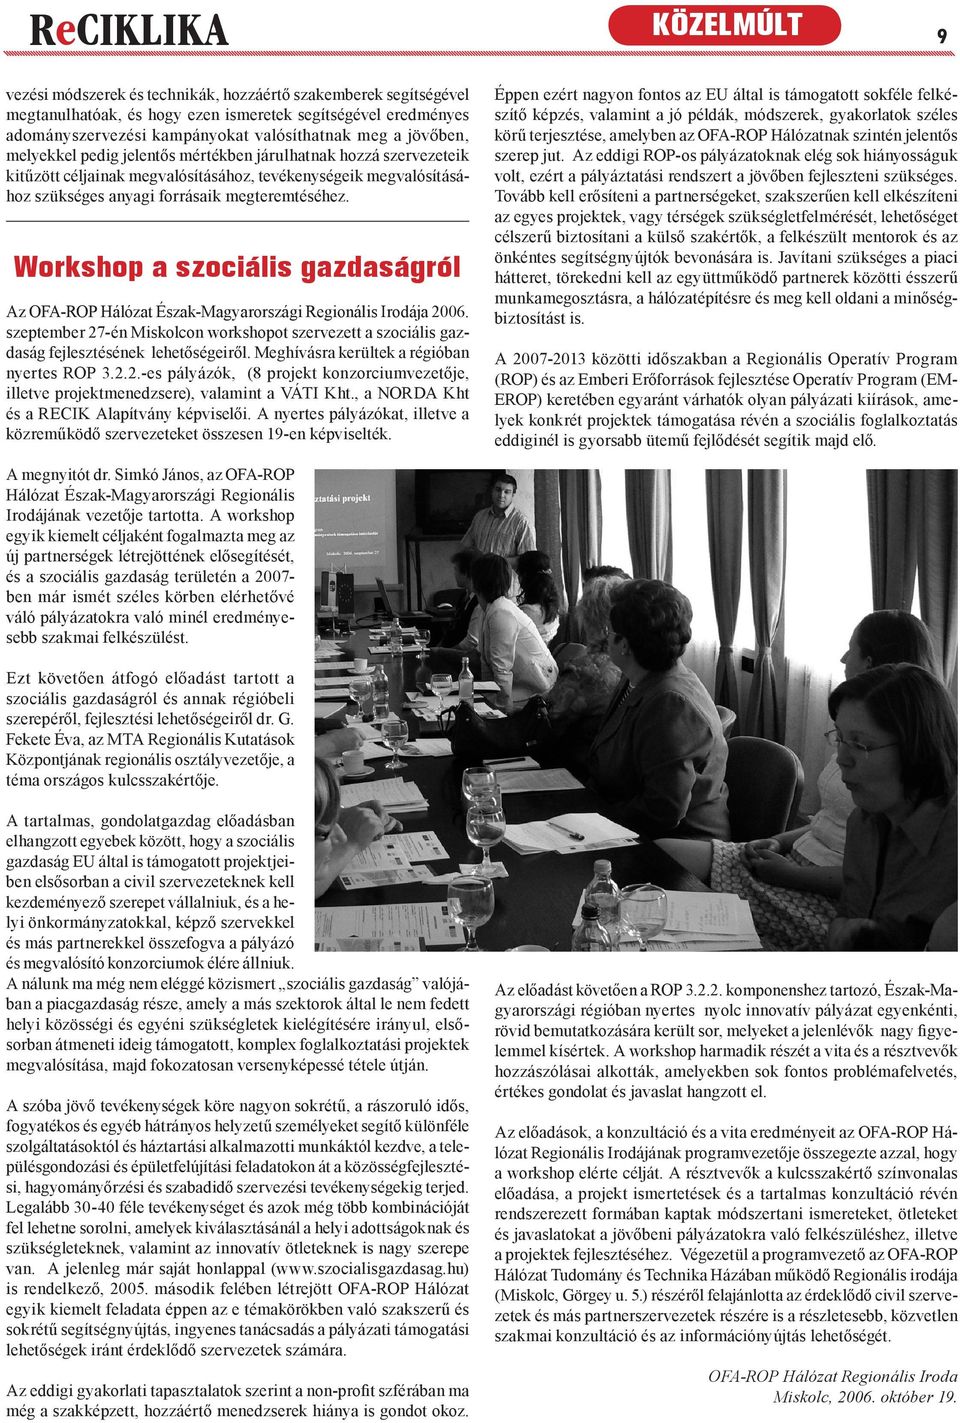 Workshop a szociális gazdaságról Az OFA-ROP Hálózat Észak-Magyarországi Regionális Irodája 2006. szeptember 27-én Miskolcon workshopot szervezett a szociális gazdaság fejlesztésének lehetőségeiről.